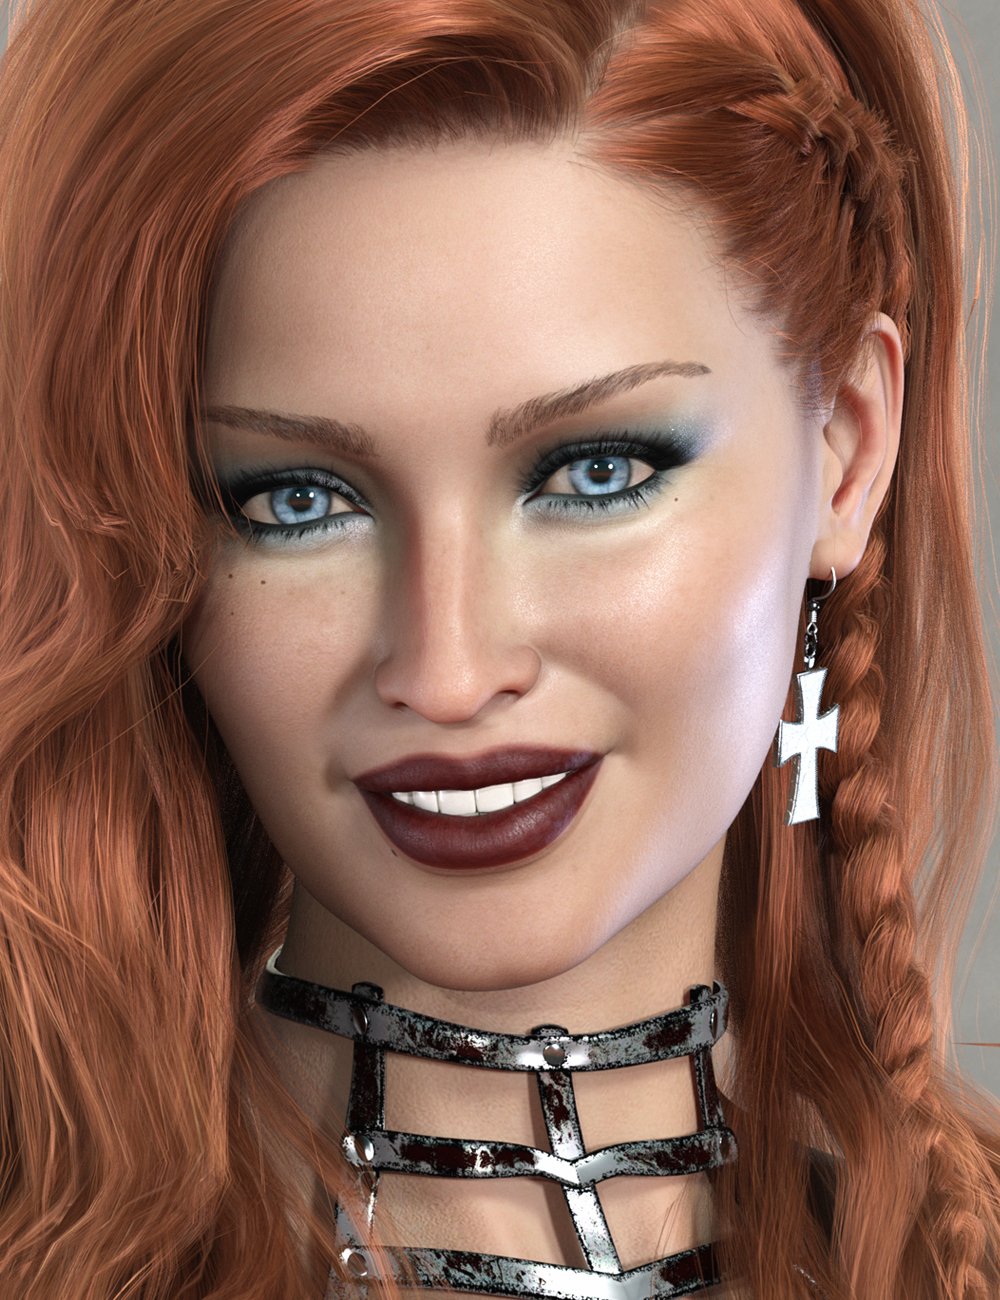 Rosamond HD for Genesis 8.1 Female by: Emrys, 3D Models by Daz 3D